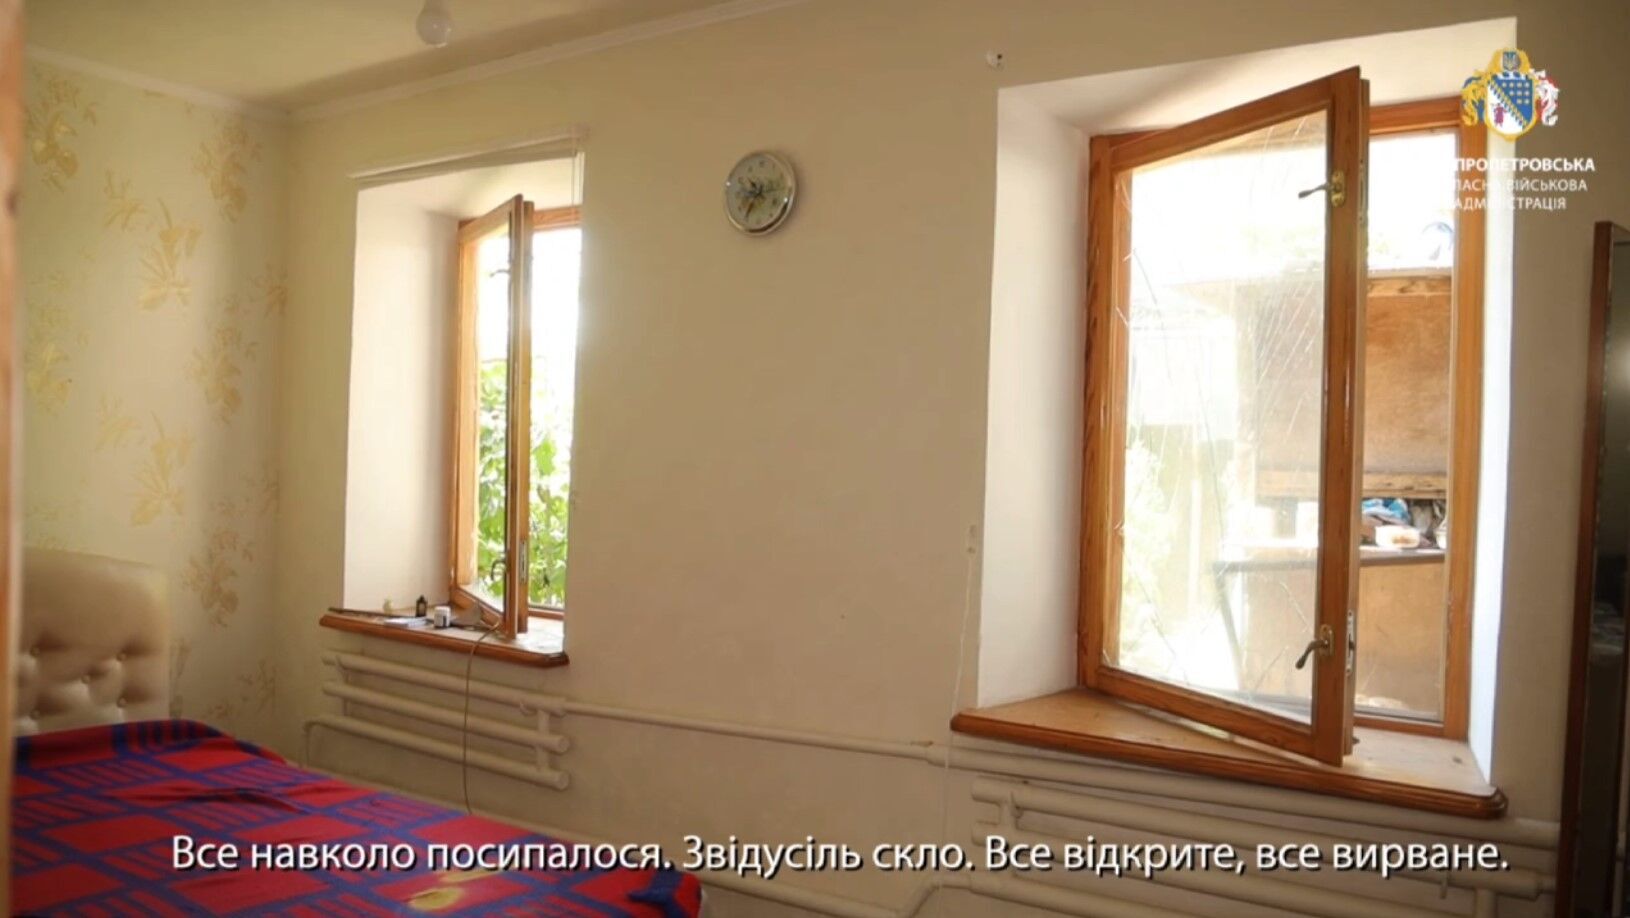 "Досі трусить": мешканці Дніпра розповіли про момент російської атаки. Відео 